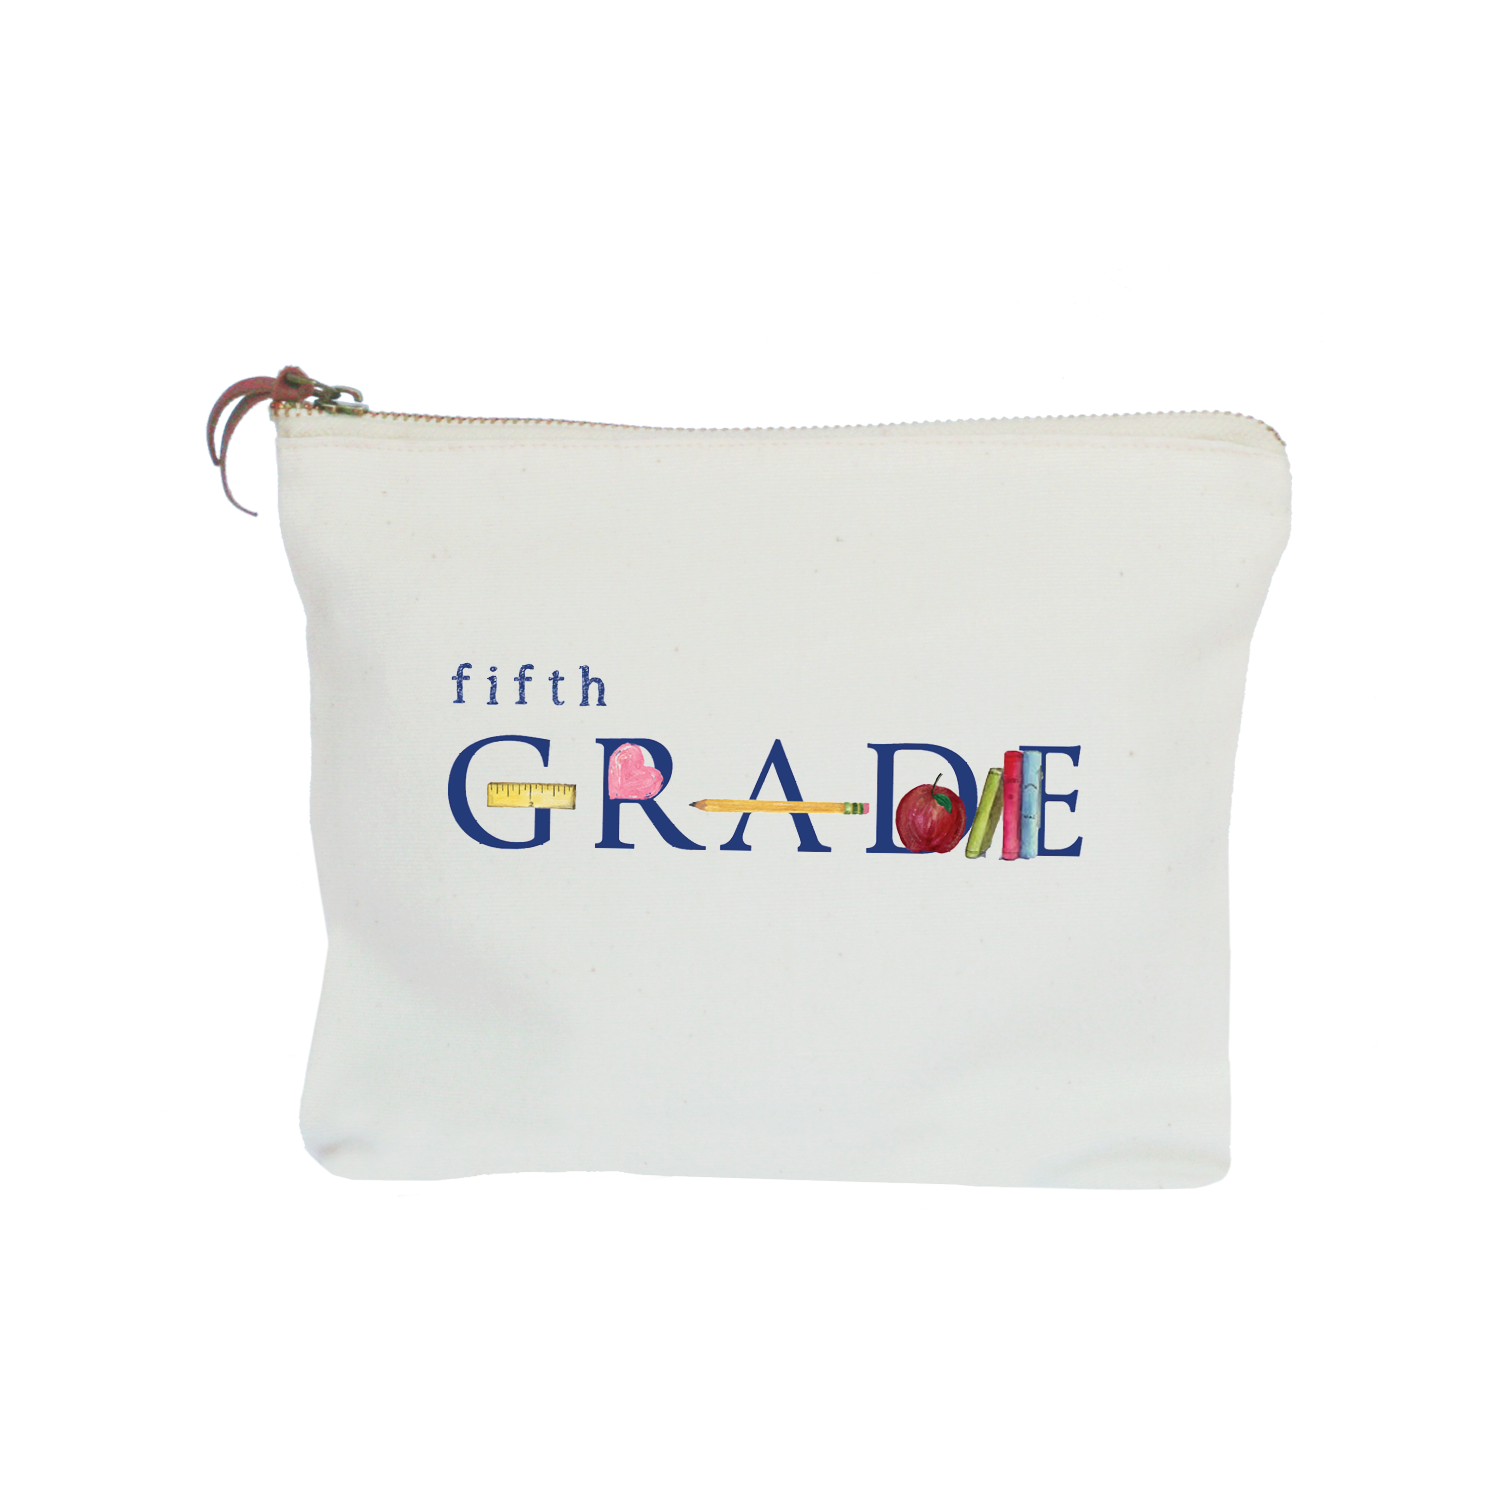 fifth grade zipper pouch